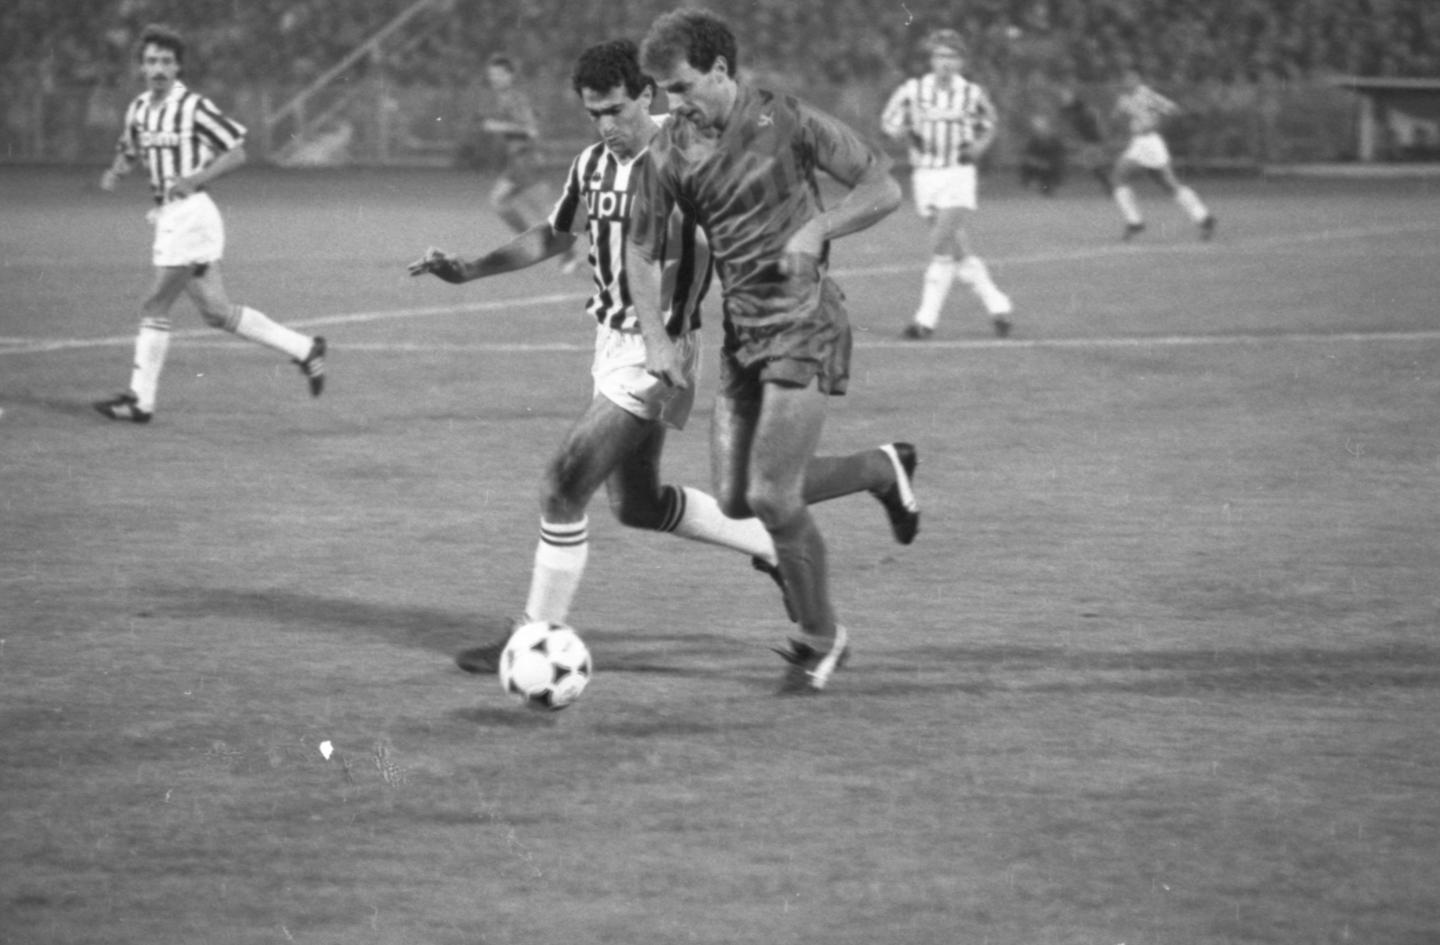 Górnik Zabrze - Juventus Turyn 0:1 (12.09.1989)